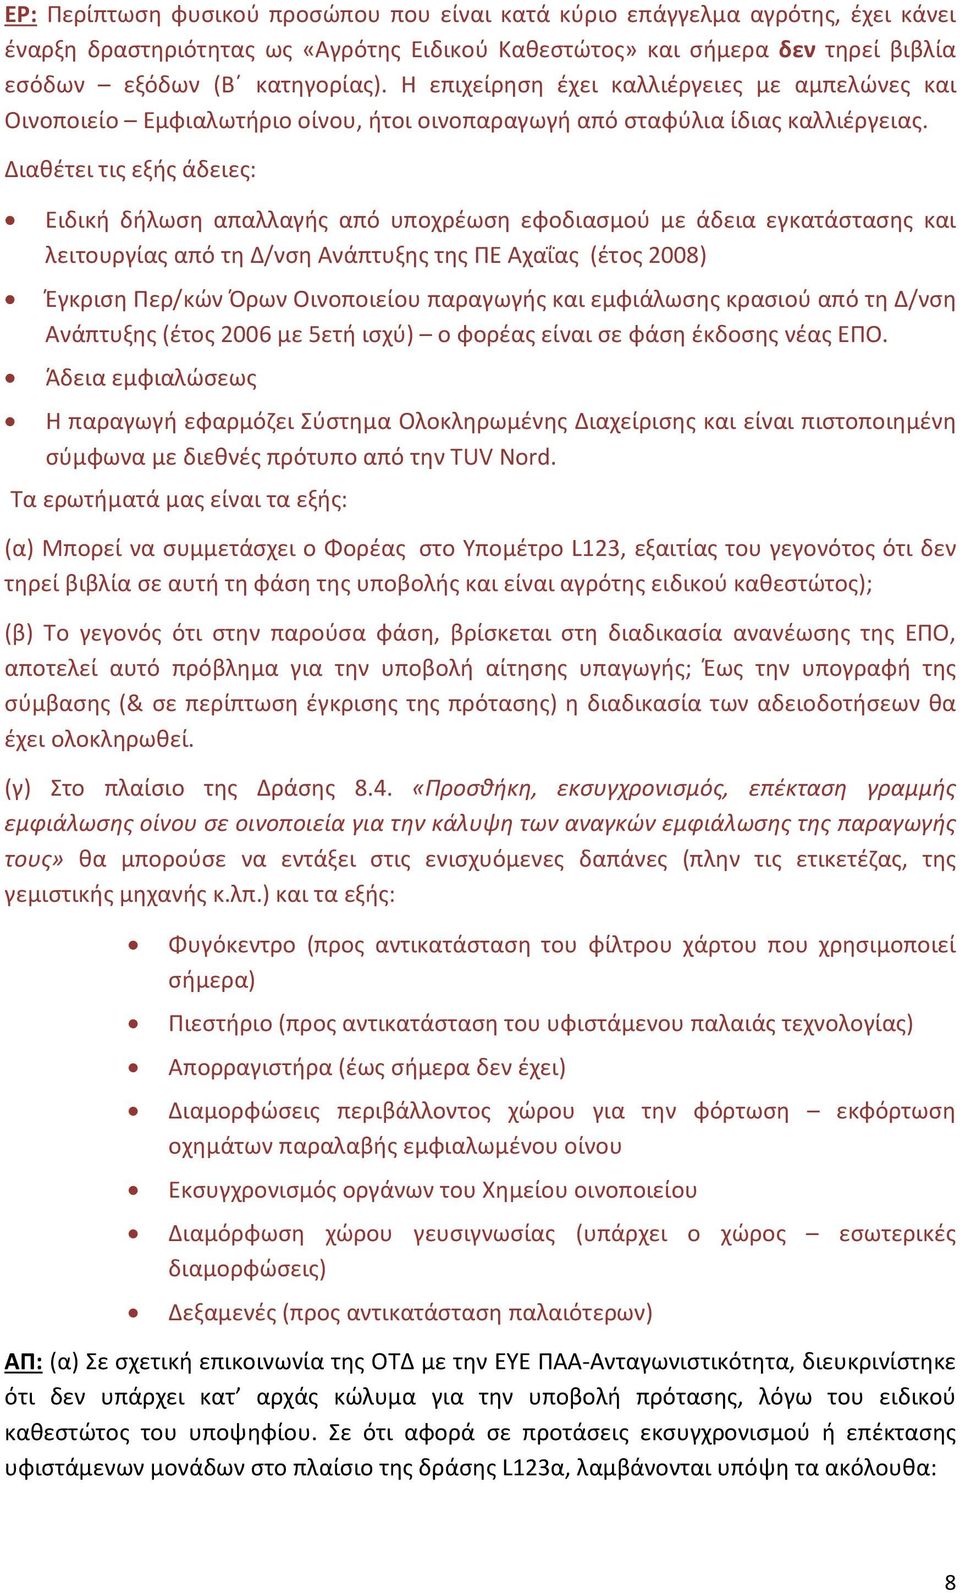 Διαθέτει τις εξής άδειες: Ειδική δήλωση απαλλαγής από υποχρέωση εφοδιασμού με άδεια εγκατάστασης και λειτουργίας από τη Δ/νση Ανάπτυξης της ΠΕ Αχαΐας (έτος 2008) Έγκριση Περ/κών Όρων Οινοποιείου